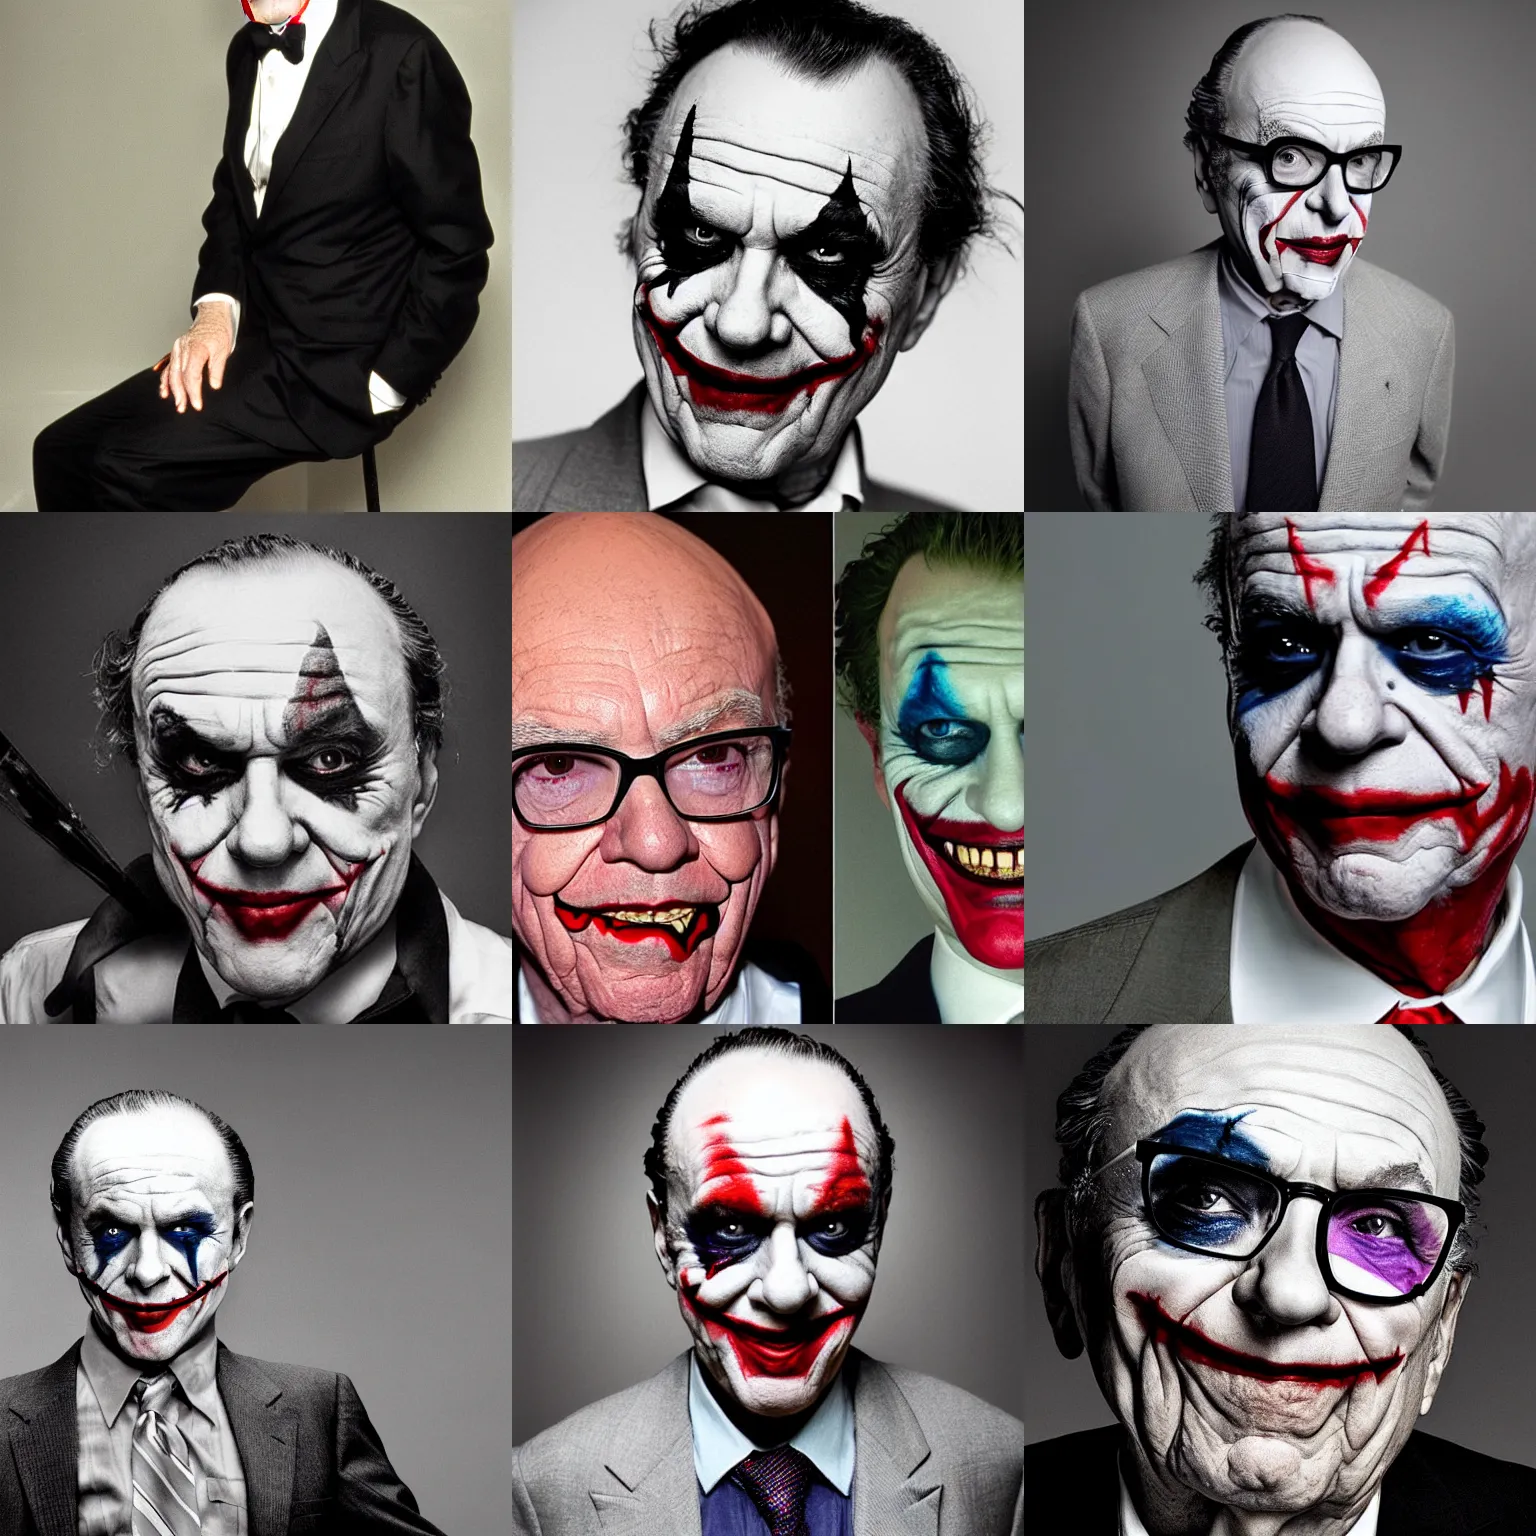 Prompt: Rupert Murdoch as Heath Ledger\'s joker, Rupert Murdoch, joker makeup, portrait photography